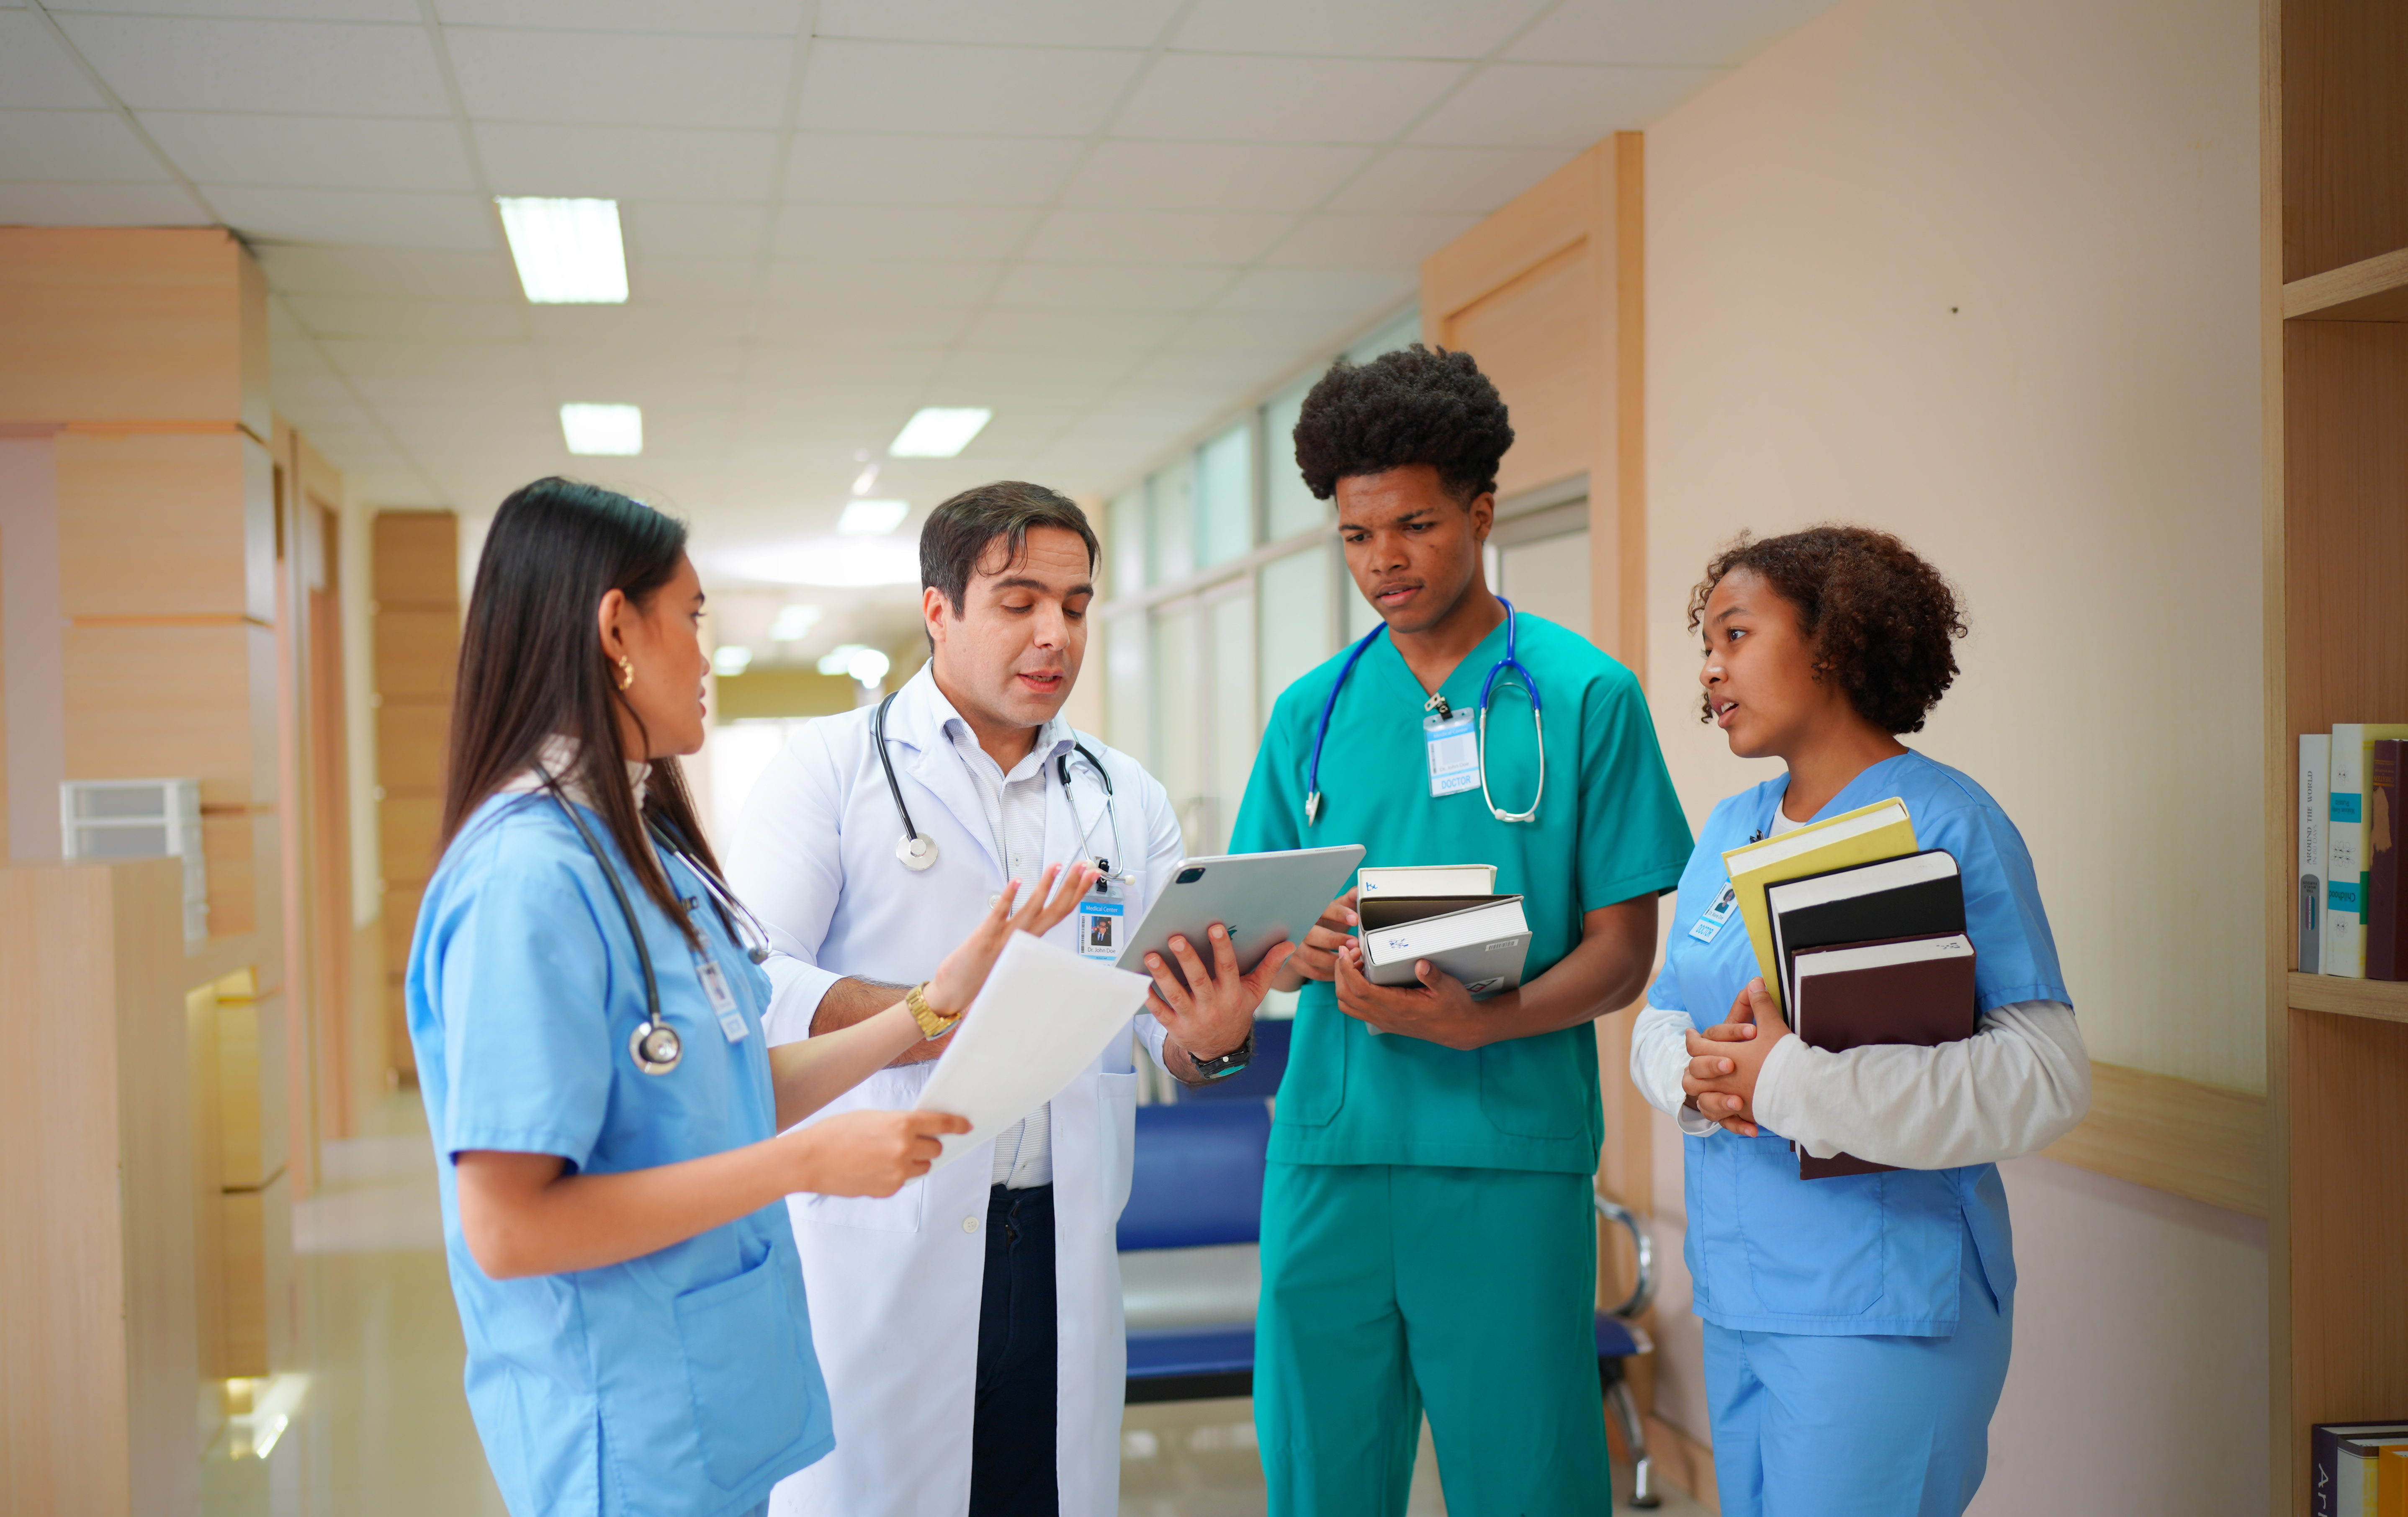 University of Central Missouri Ranked #1 Most Affordable Online MSN Nurse Practitioner Program